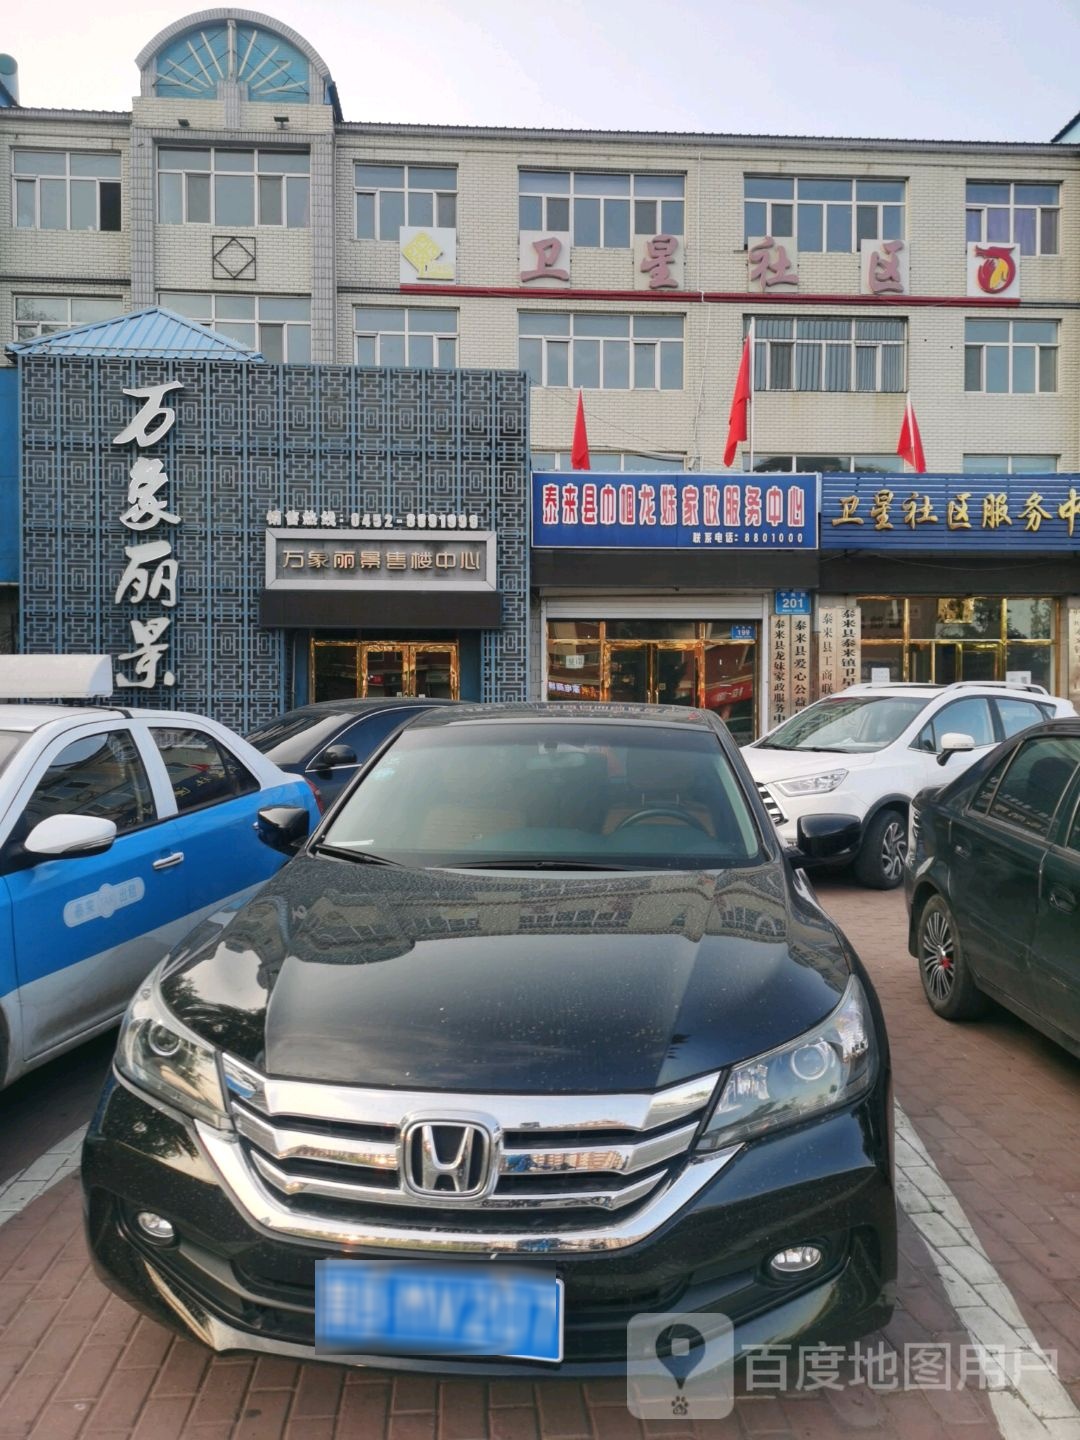 齐齐哈尔市泰来县中央街龙江银行泰来支行西侧约90米